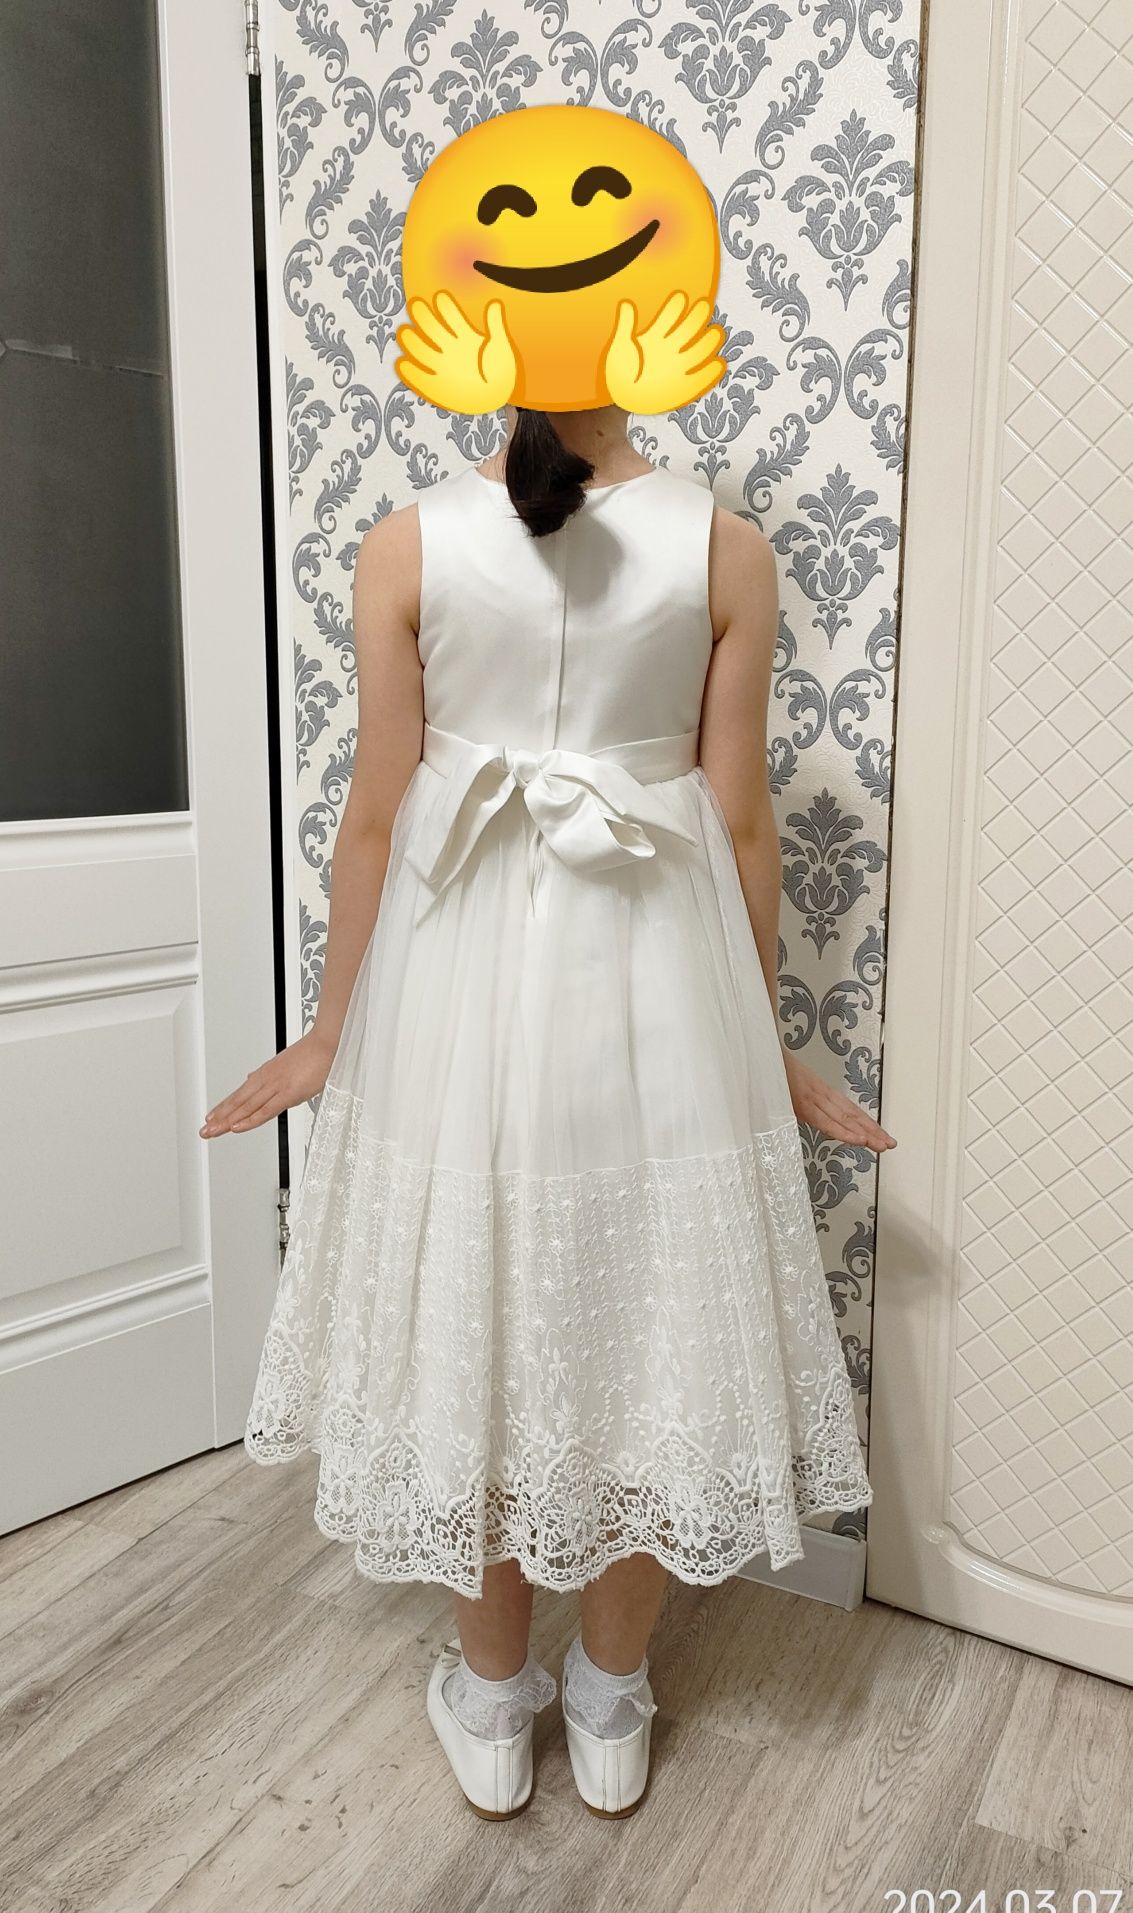 Бальное платье. Белое платье. Детское платье. 6-10 лет. Рост - 140 см